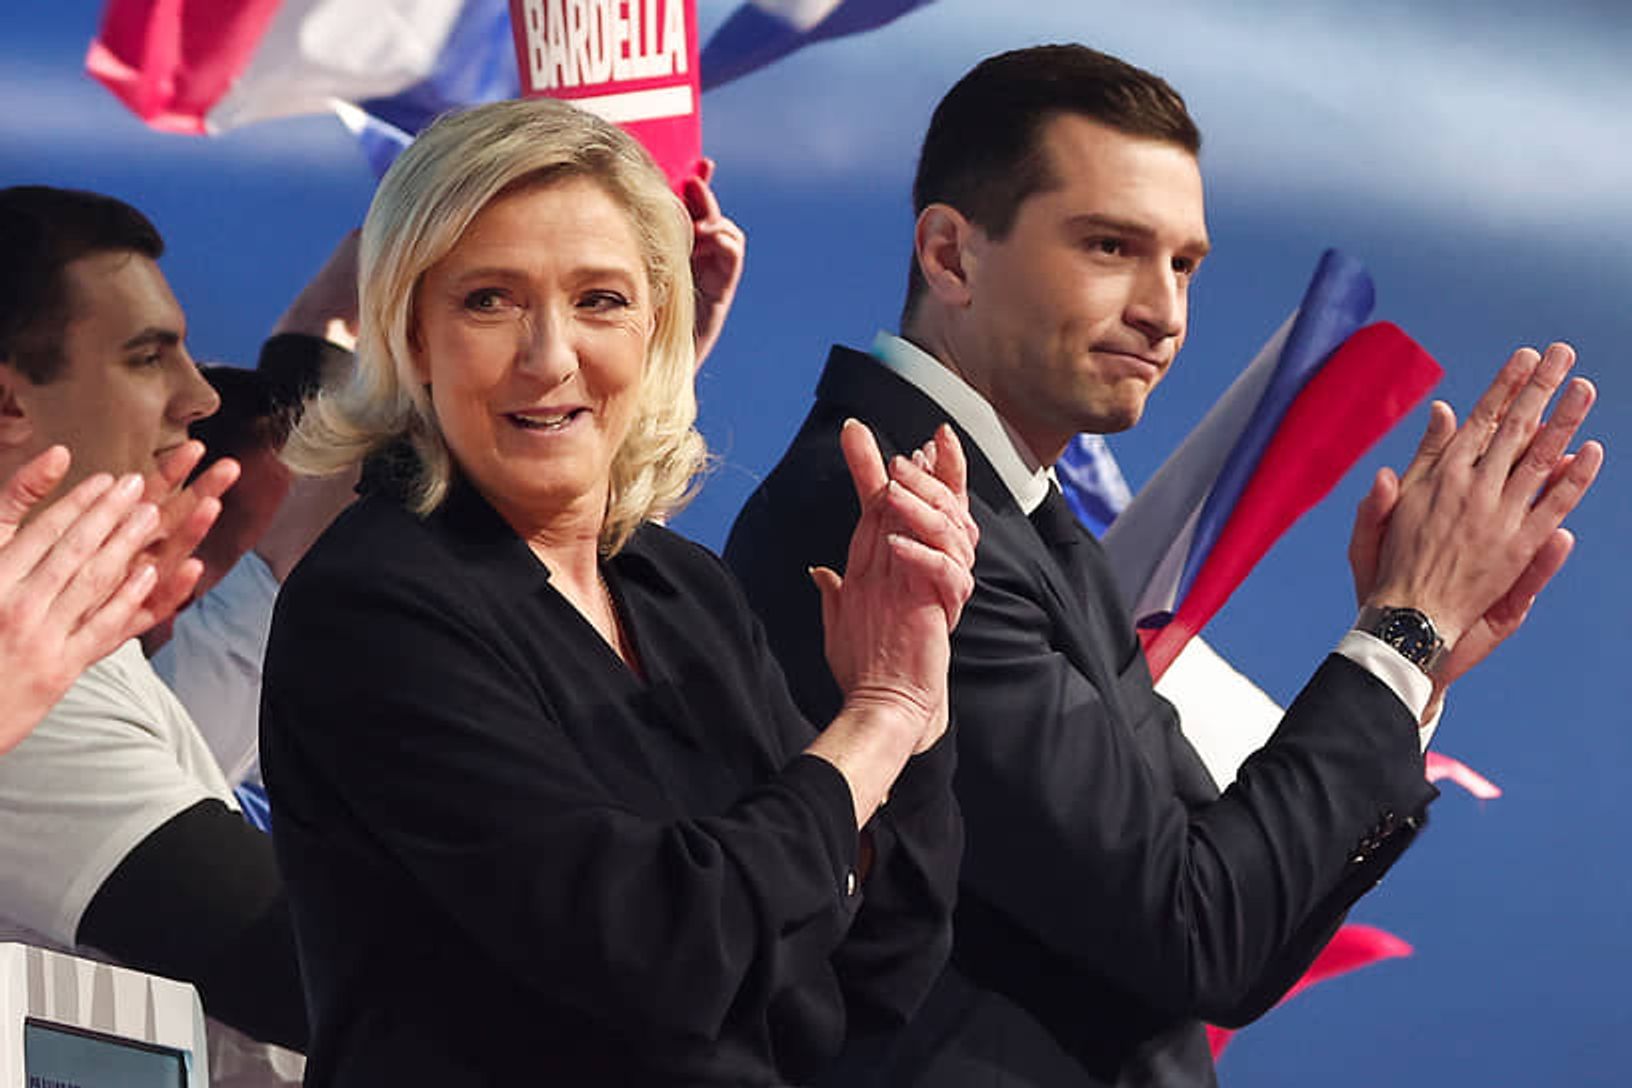  Марин Ле Пен и Жордан Барделла после выборов в Европарламент